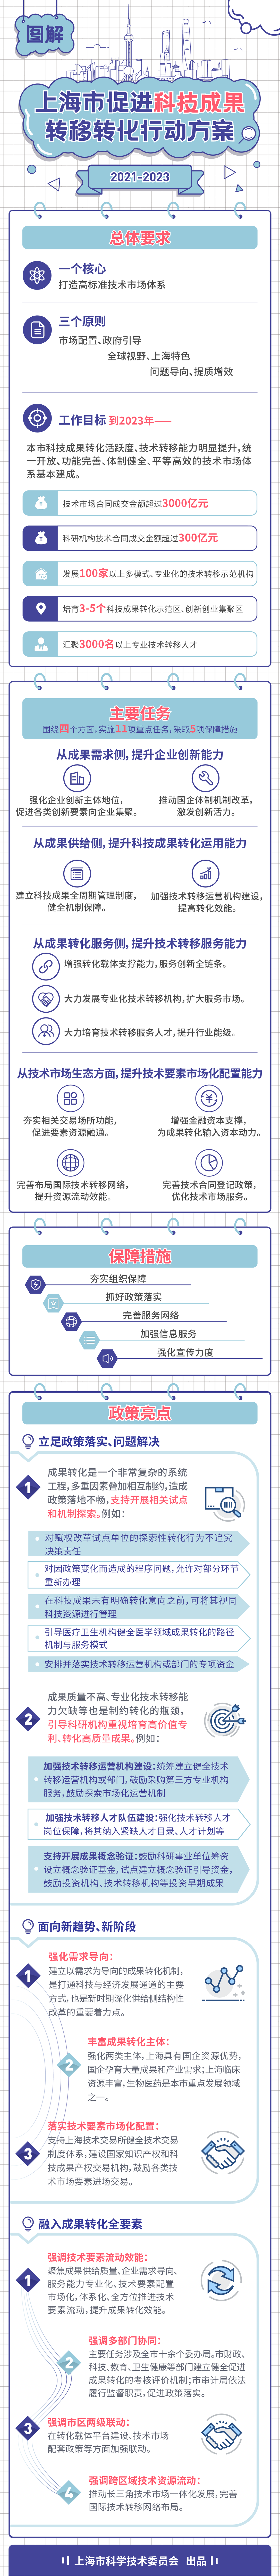 图解《上海市促进科技成果转移转化行动方案2021-2023》.png